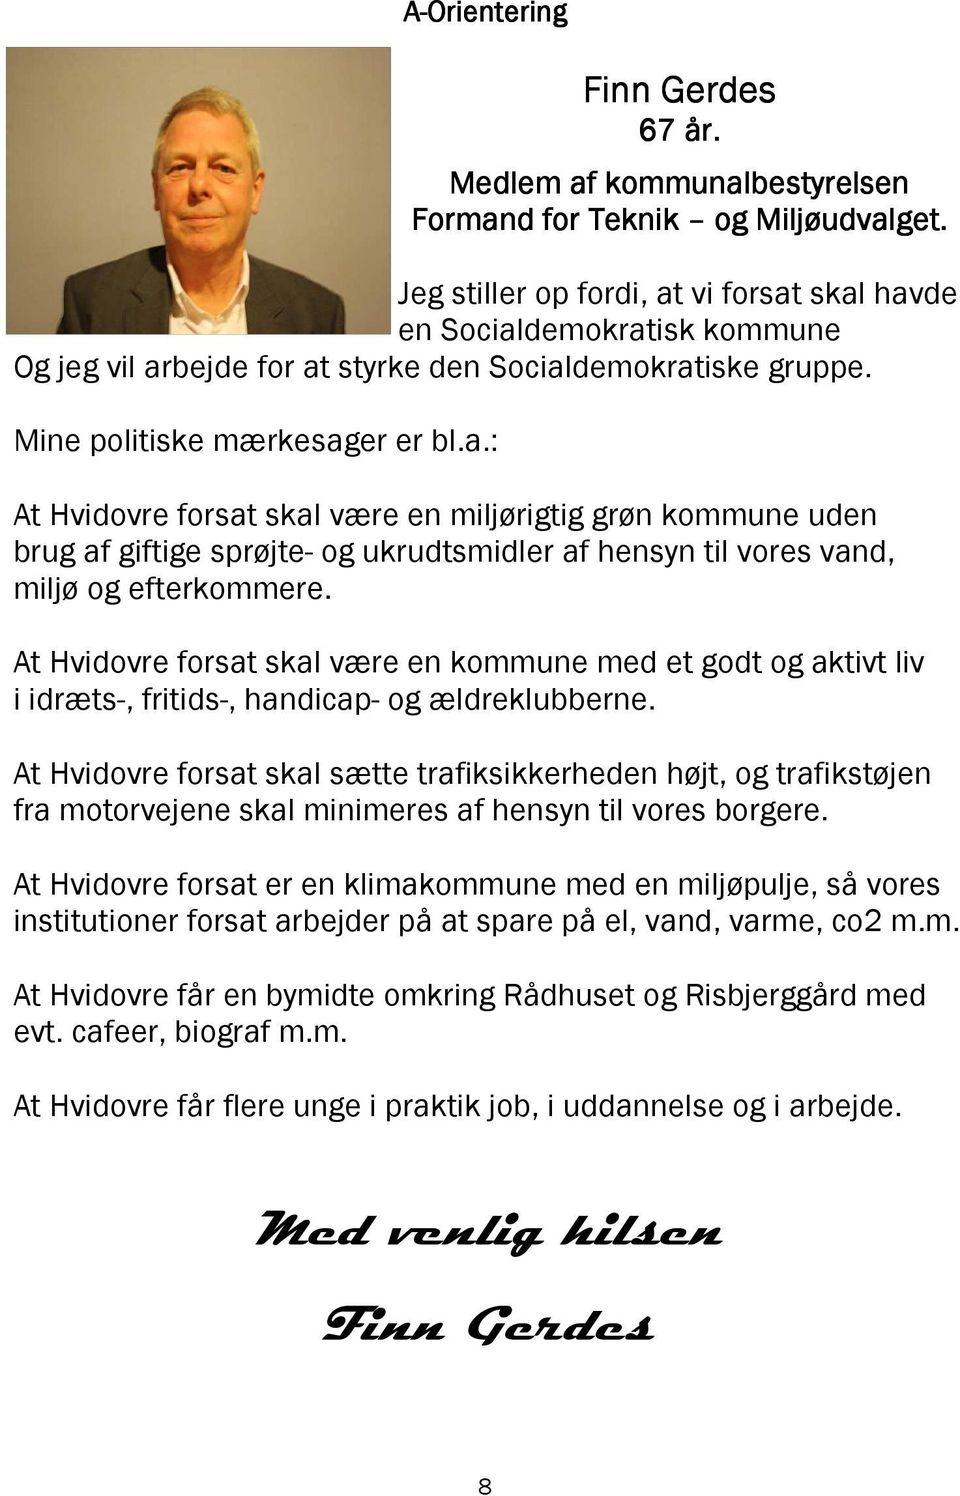 At Hvidovre forsat skal være en kommune med et godt og aktivt liv i idræts-, fritids-, handicap- og ældreklubberne.